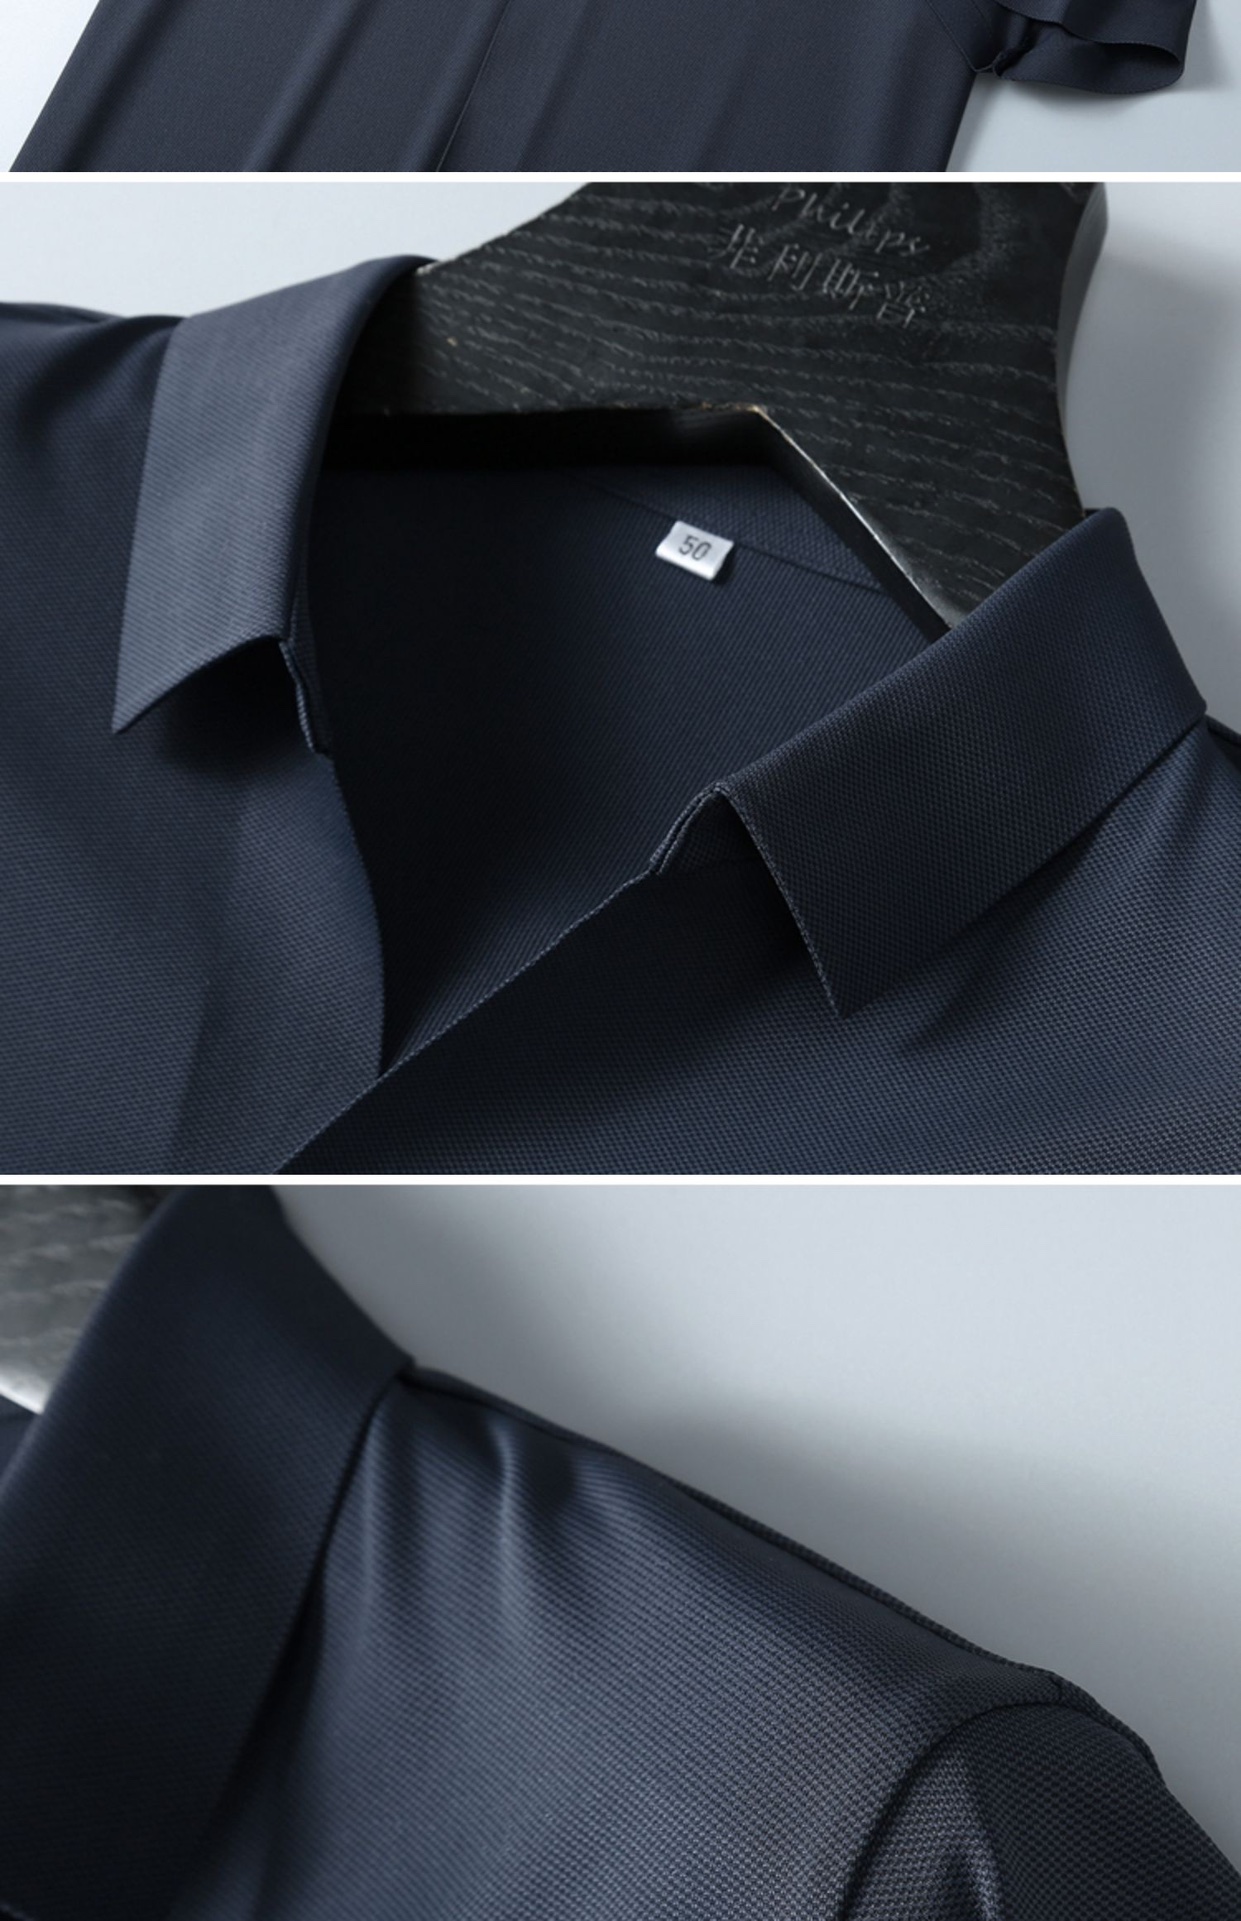 菲拉格慕时尚简约短袖T恤简洁细腻的设计和高质细节而闻名裁剪完美后标最新英国吊点线技术更加完美用料一丝不苟